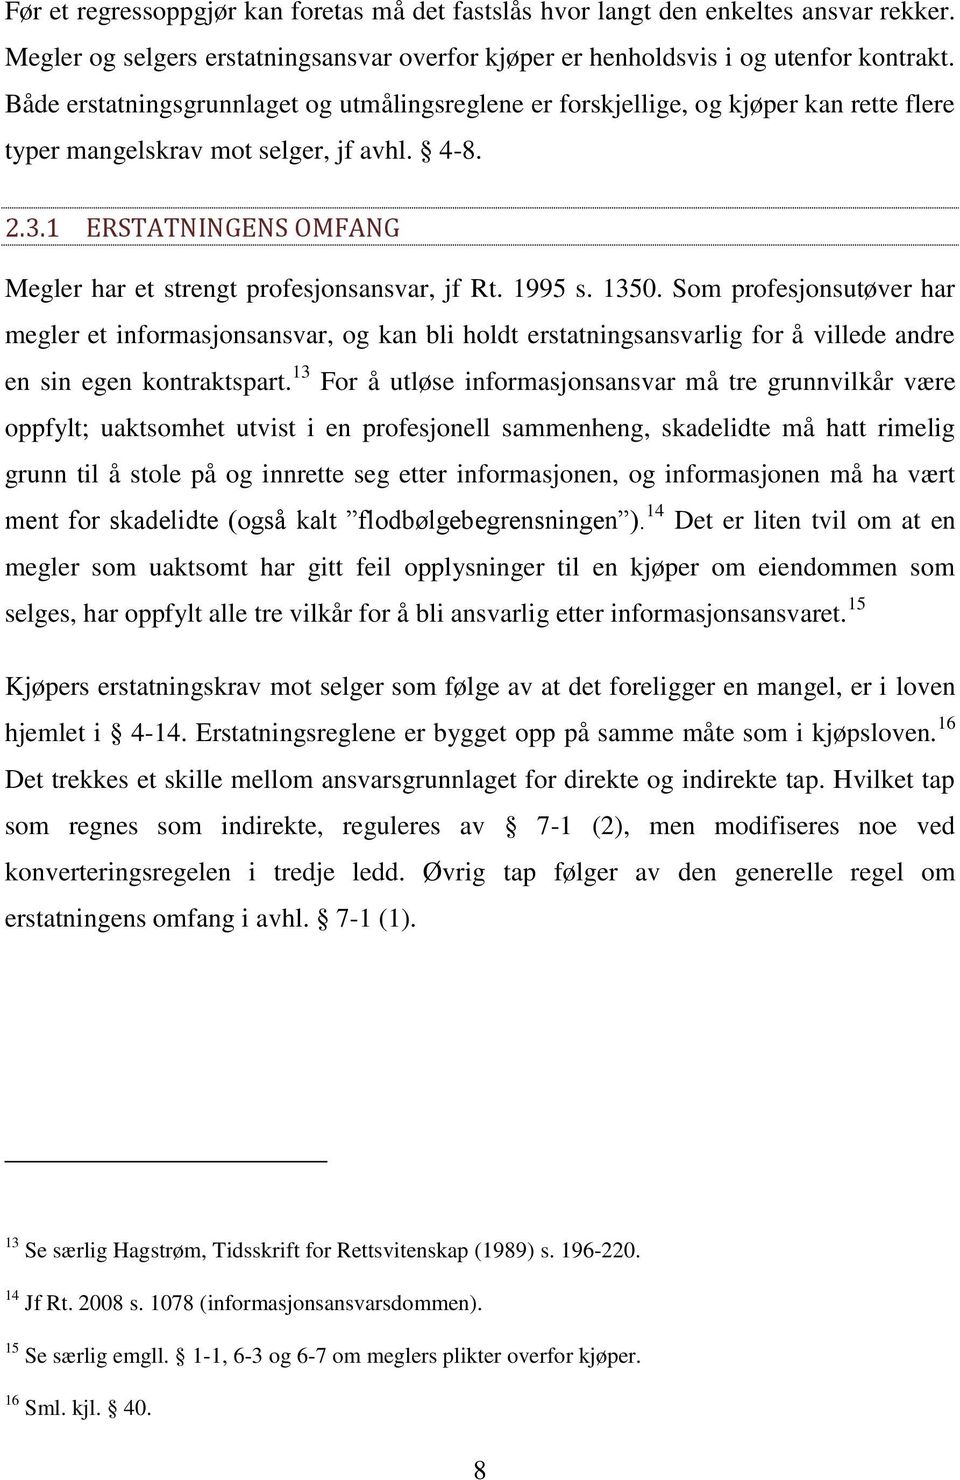 1 ERSTATNINGENS OMFANG Megler har et strengt profesjonsansvar, jf Rt. 1995 s. 1350.